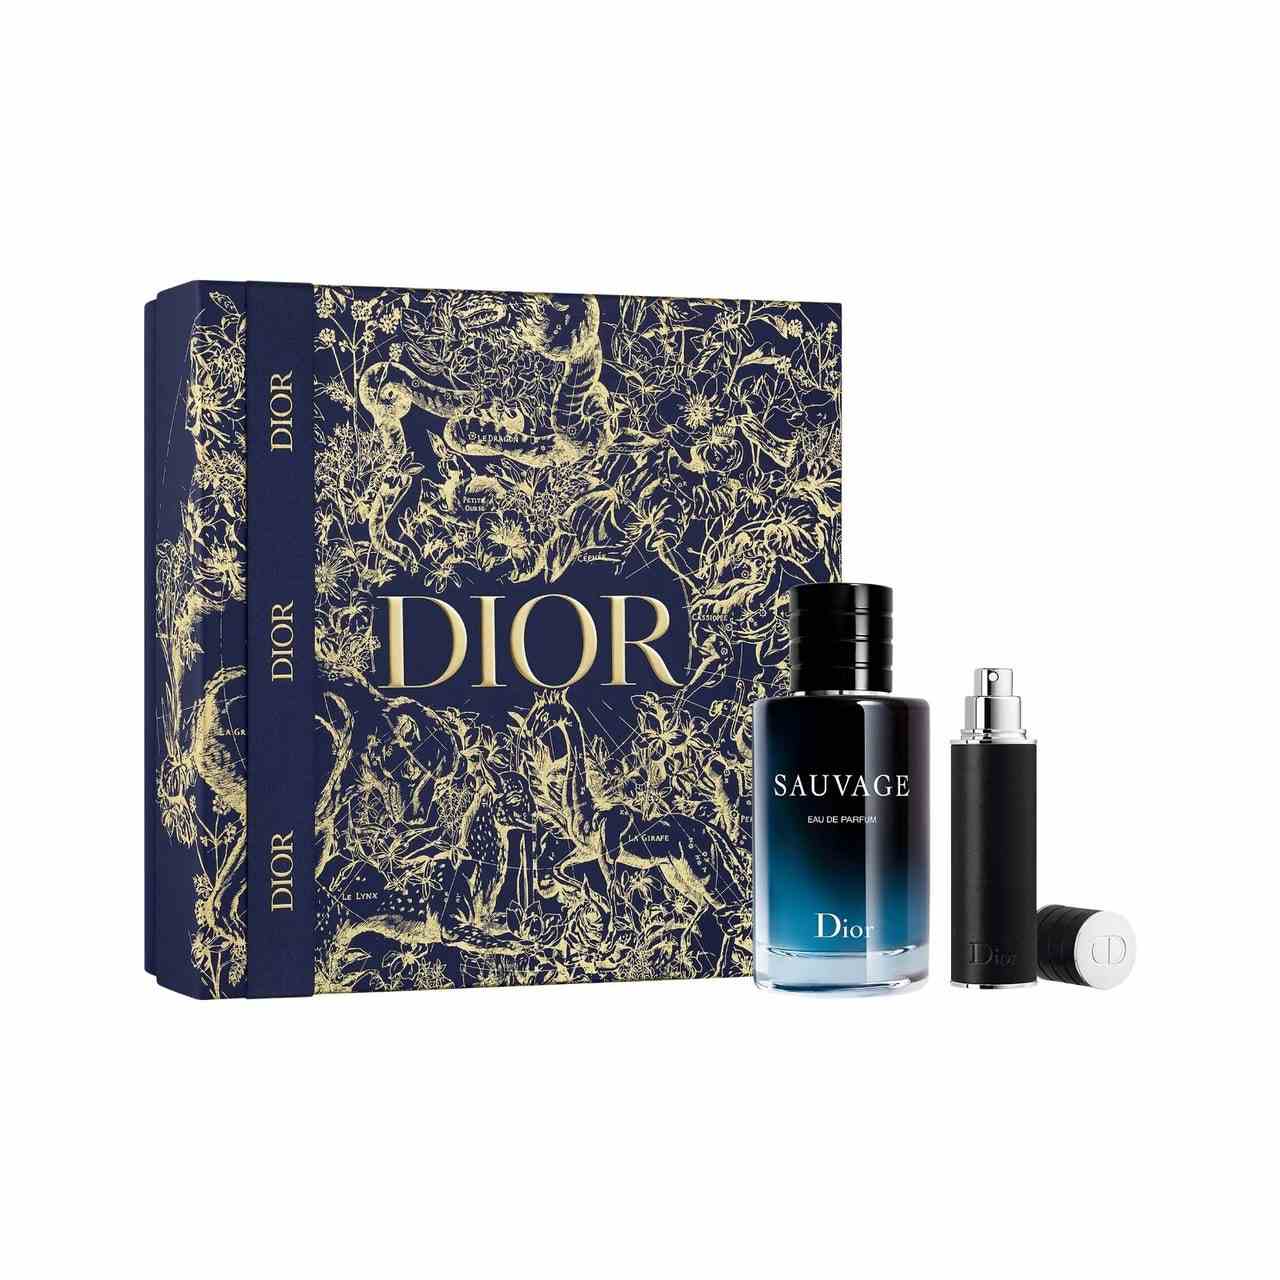 Dior Sauvage Parfum Set blaue Parfümflasche in voller Größe, schwarzes Parfüm in Reisegröße und marineblaue Schachtel mit goldenen Details auf weißem Hintergrund